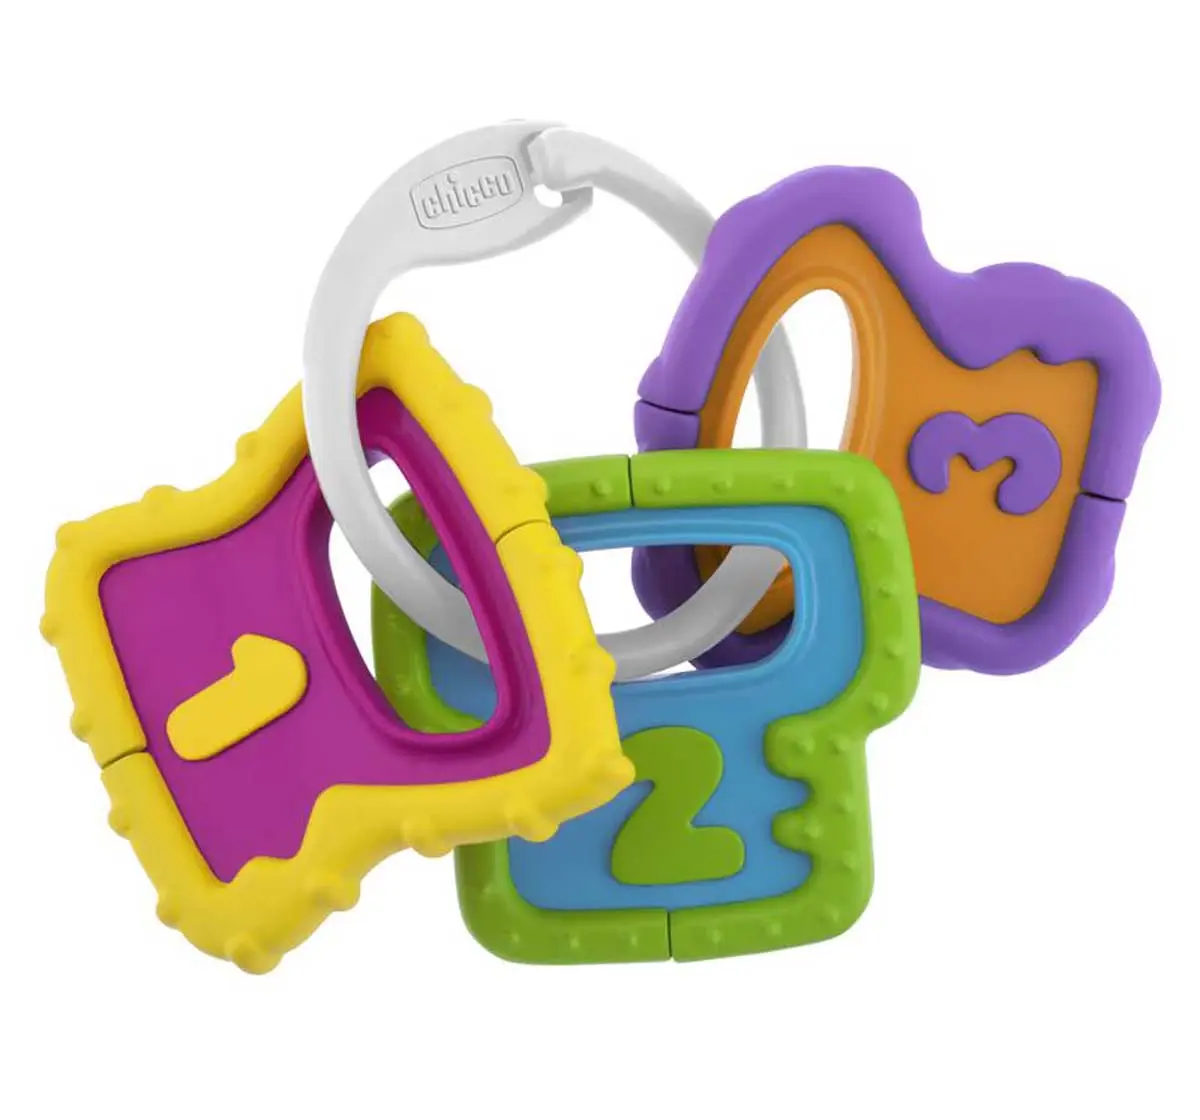 Chicco Easy Grasp Keys Rattle for Kids 3M+, Multicolour